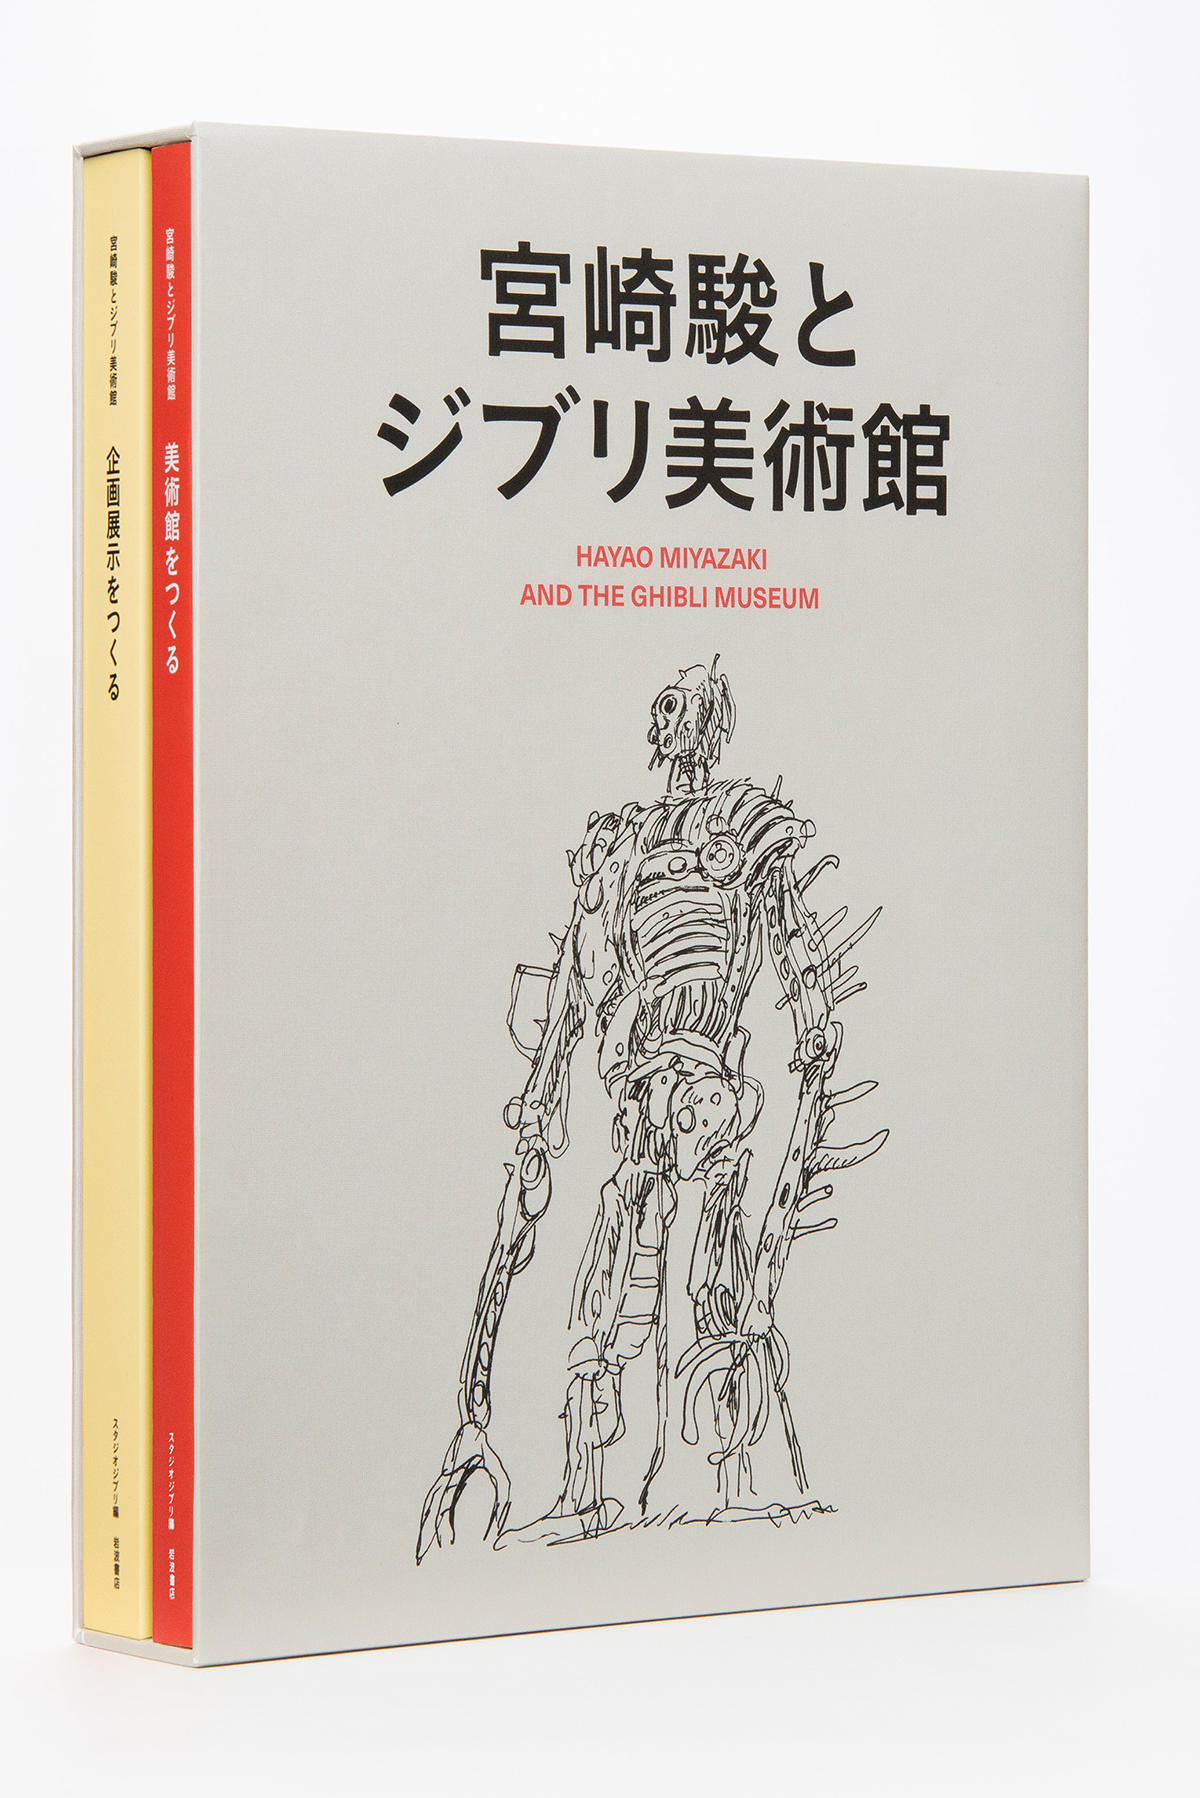 2冊セット大型本『宮崎駿とジブリ美術館』刊行のお知らせ - 三鷹の森